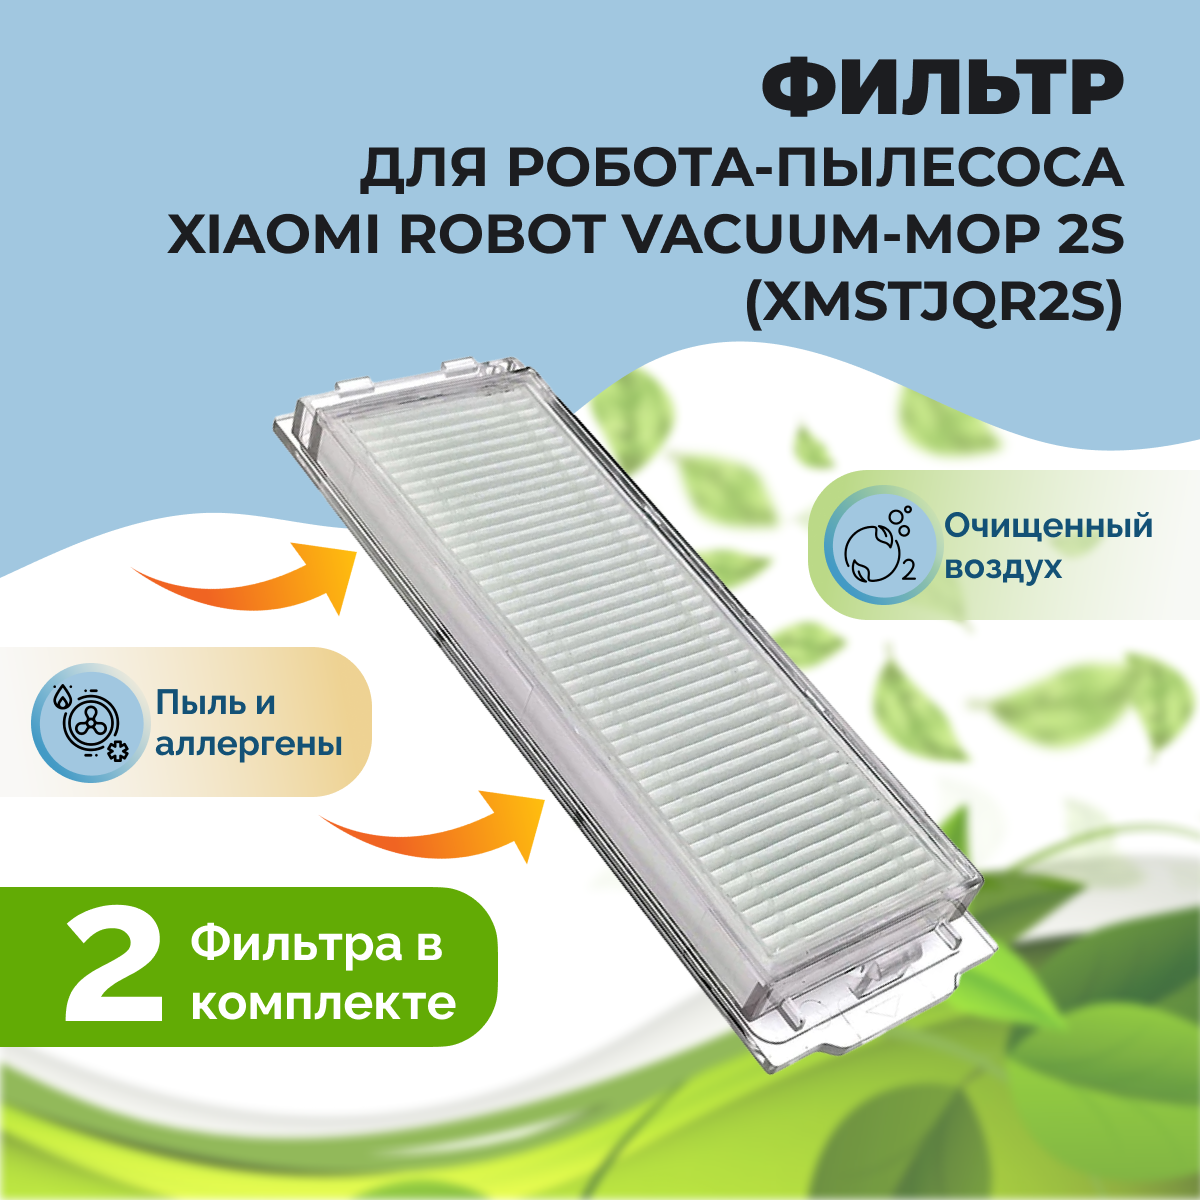 Фильтр для робота-пылесоса Xiaomi Robot Vacuum-Mop 2S (XMSTJQR2S) 558127, фото 1